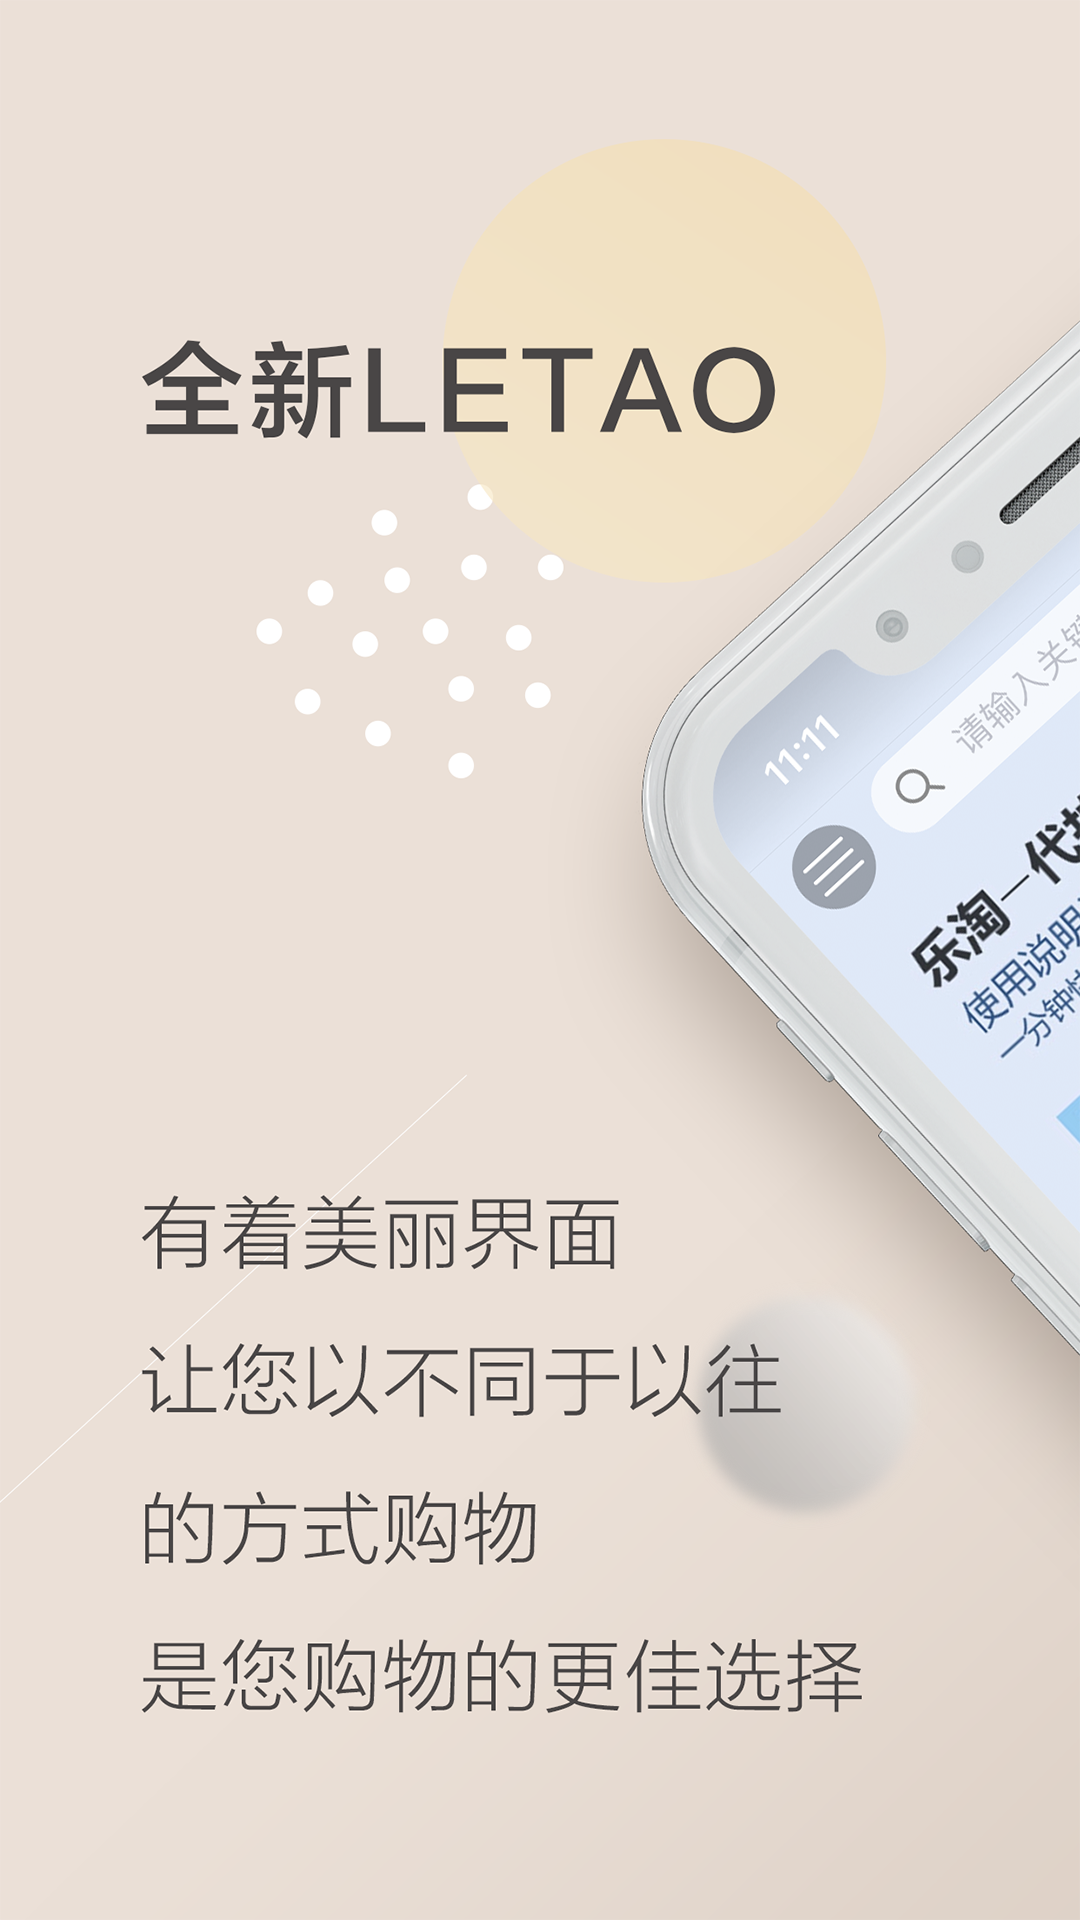 乐淘 Letao app